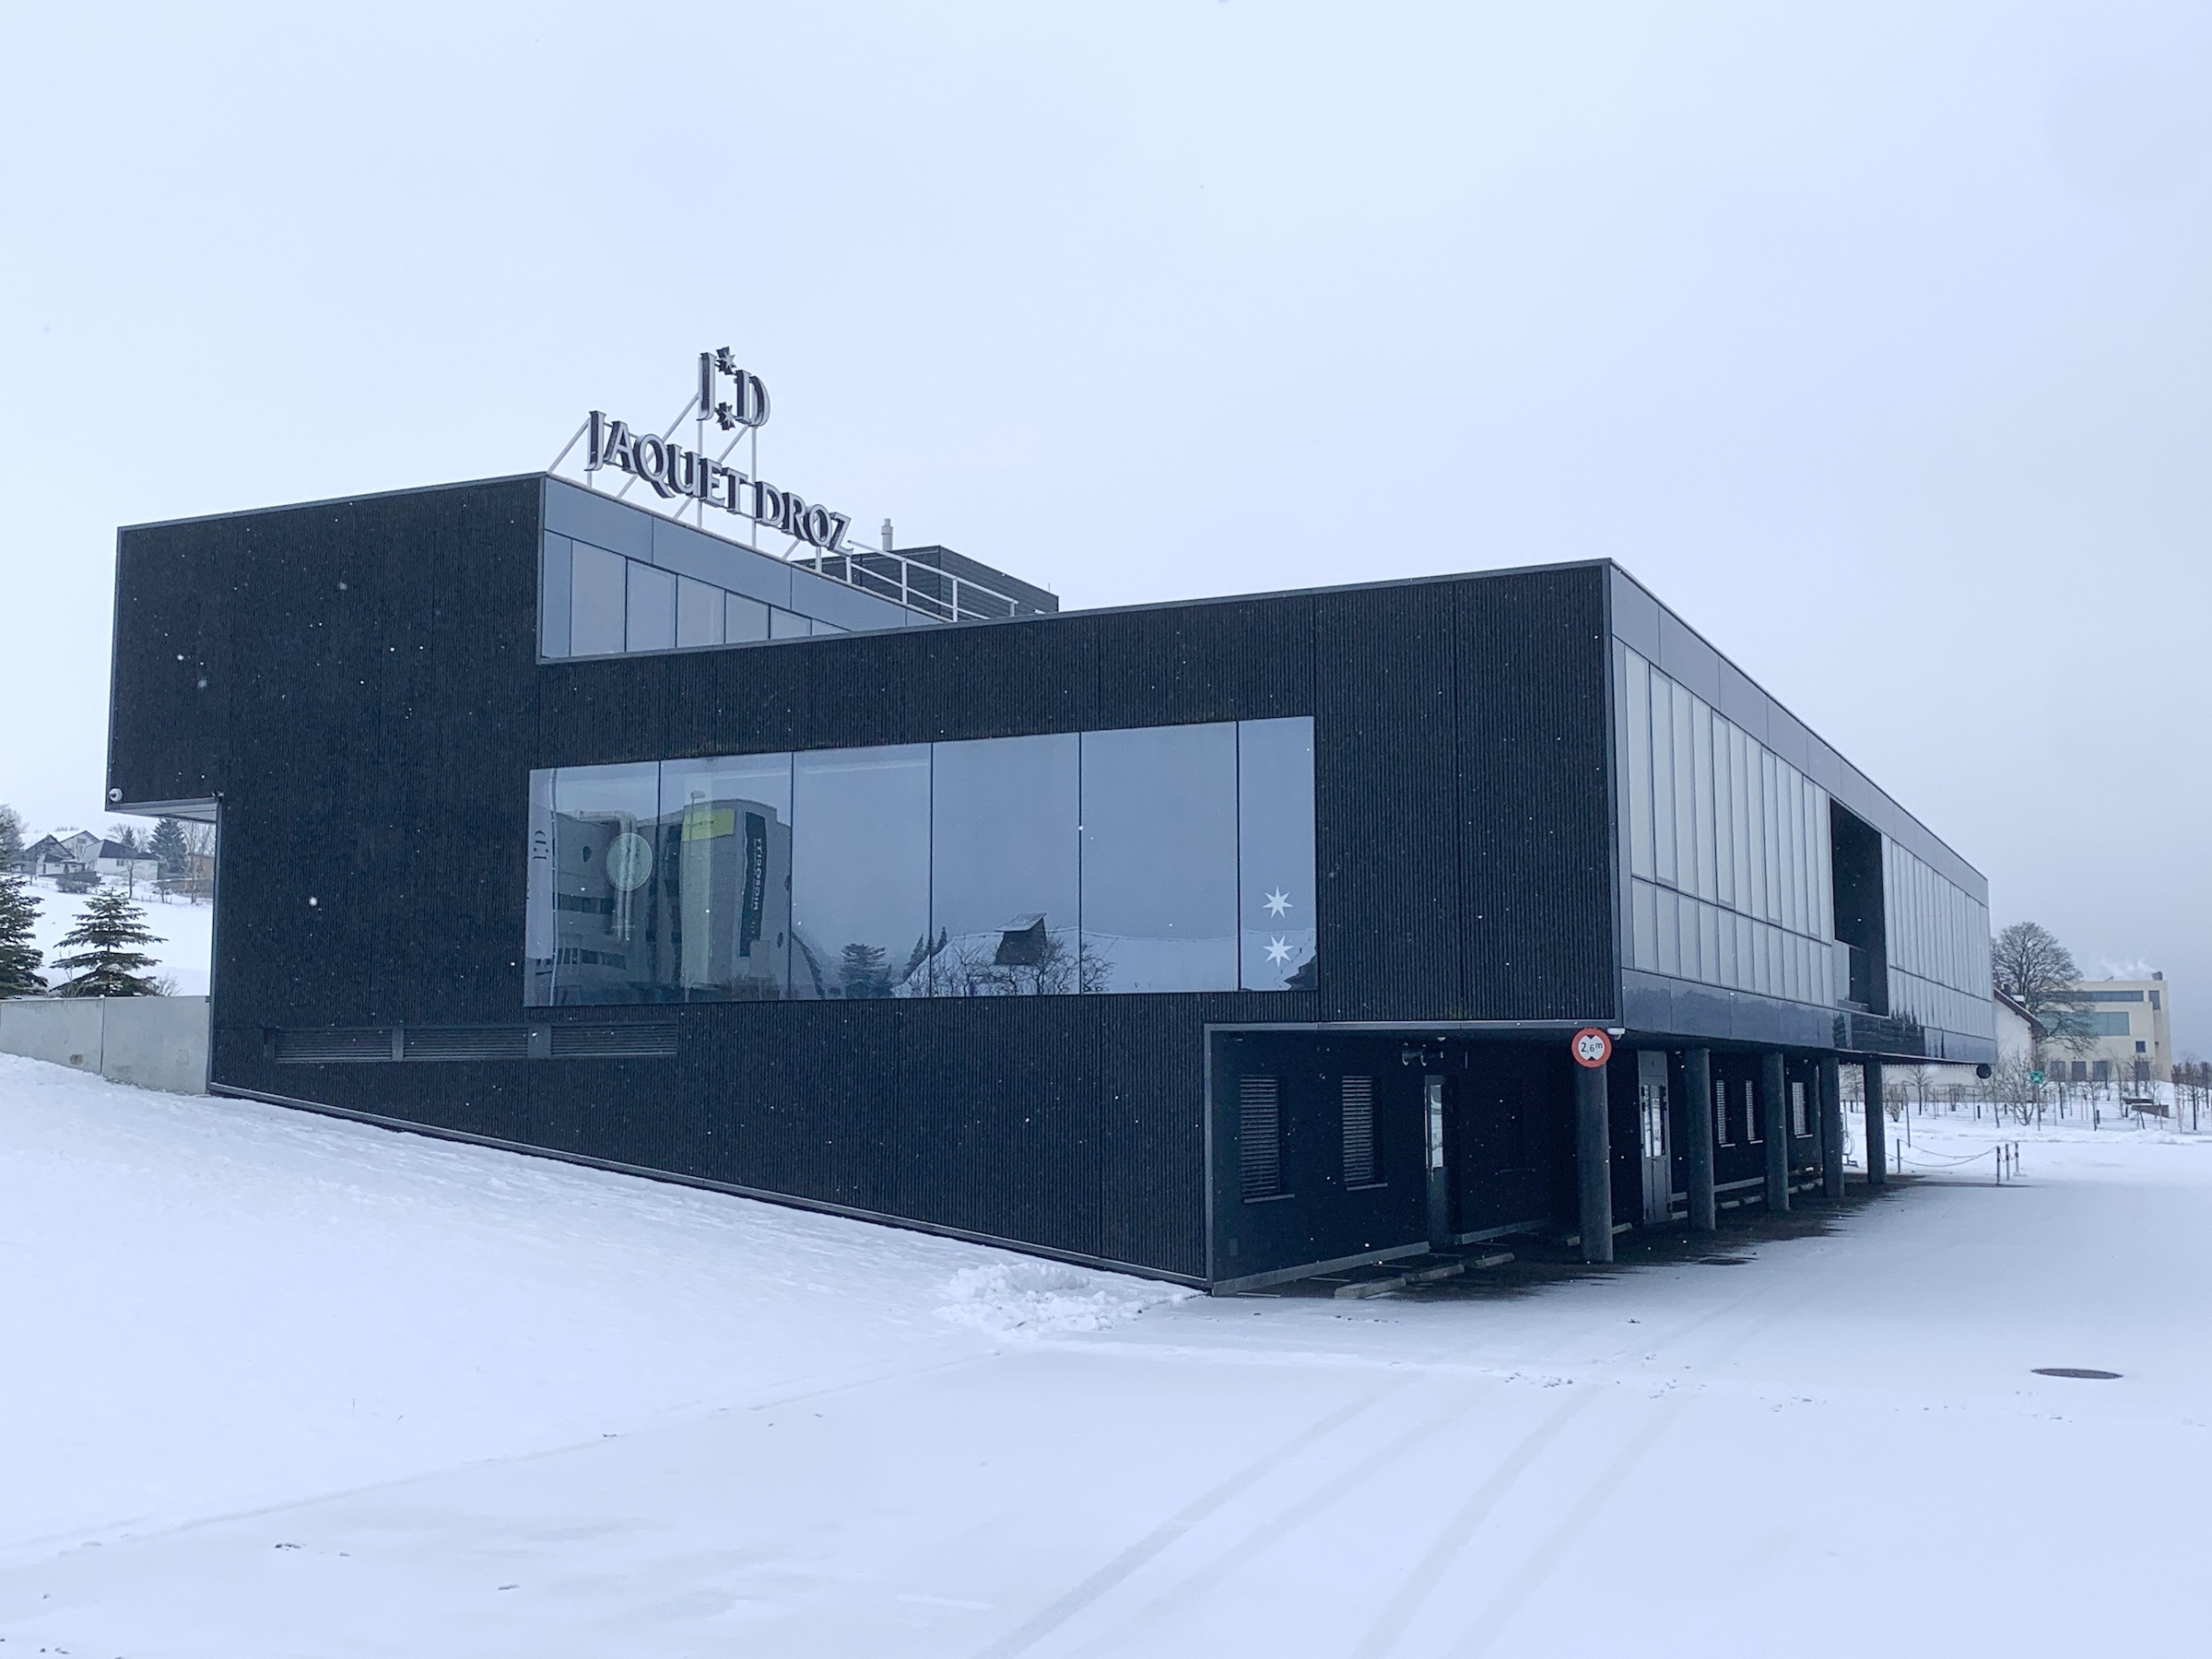 Building of the watch brand Jaquet Droz in La Chaux-de-Fonds